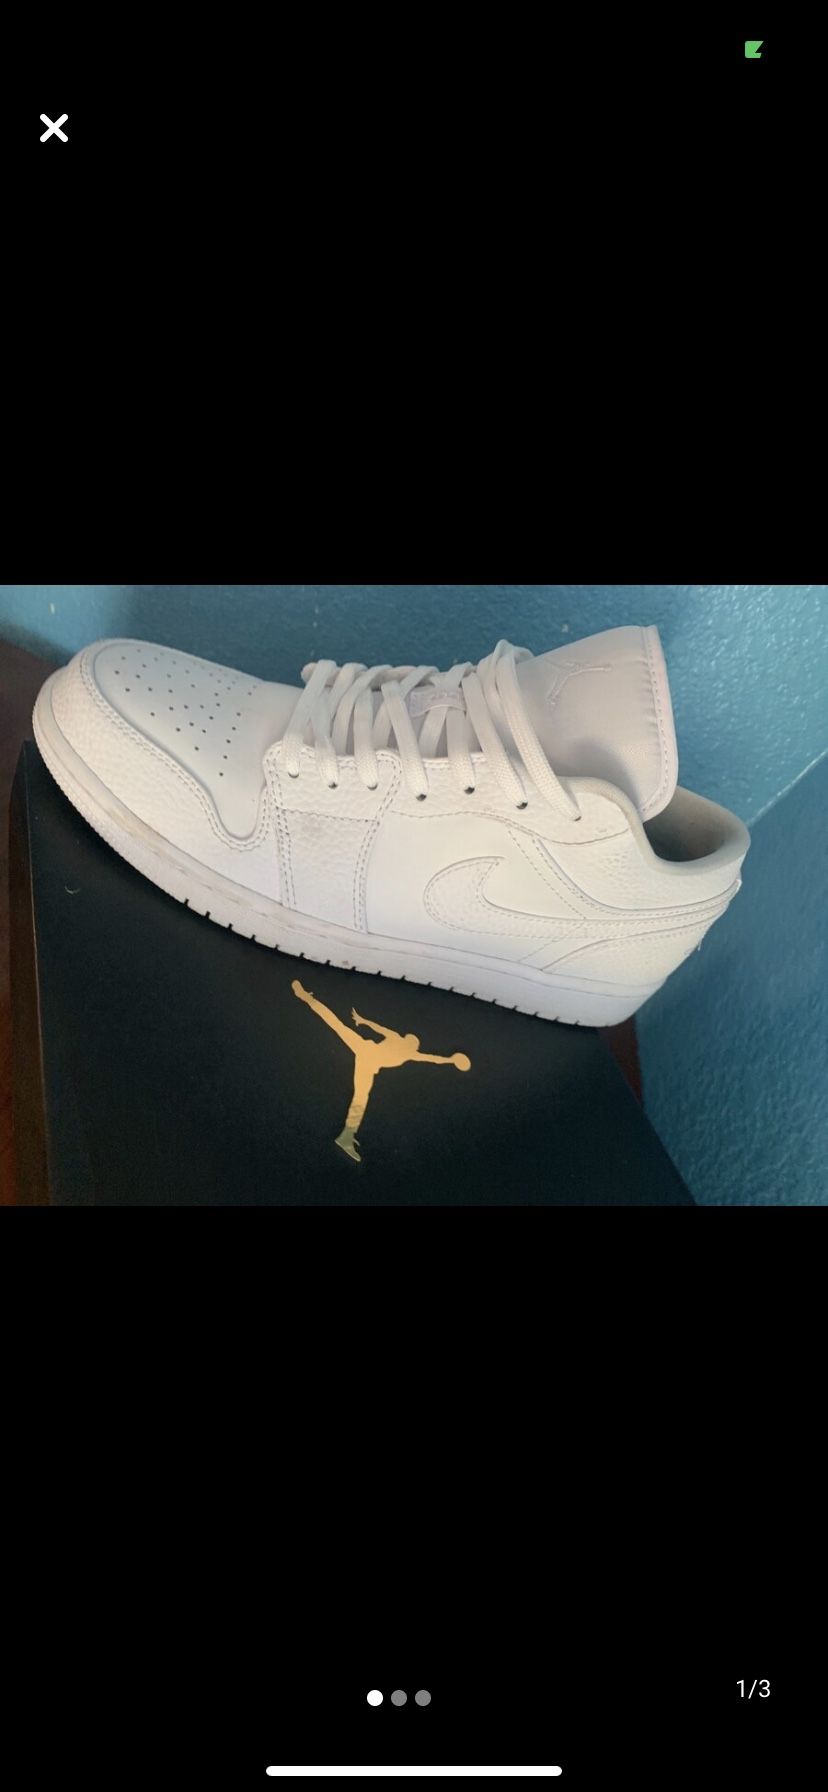 Jordan 1 all white new size 10